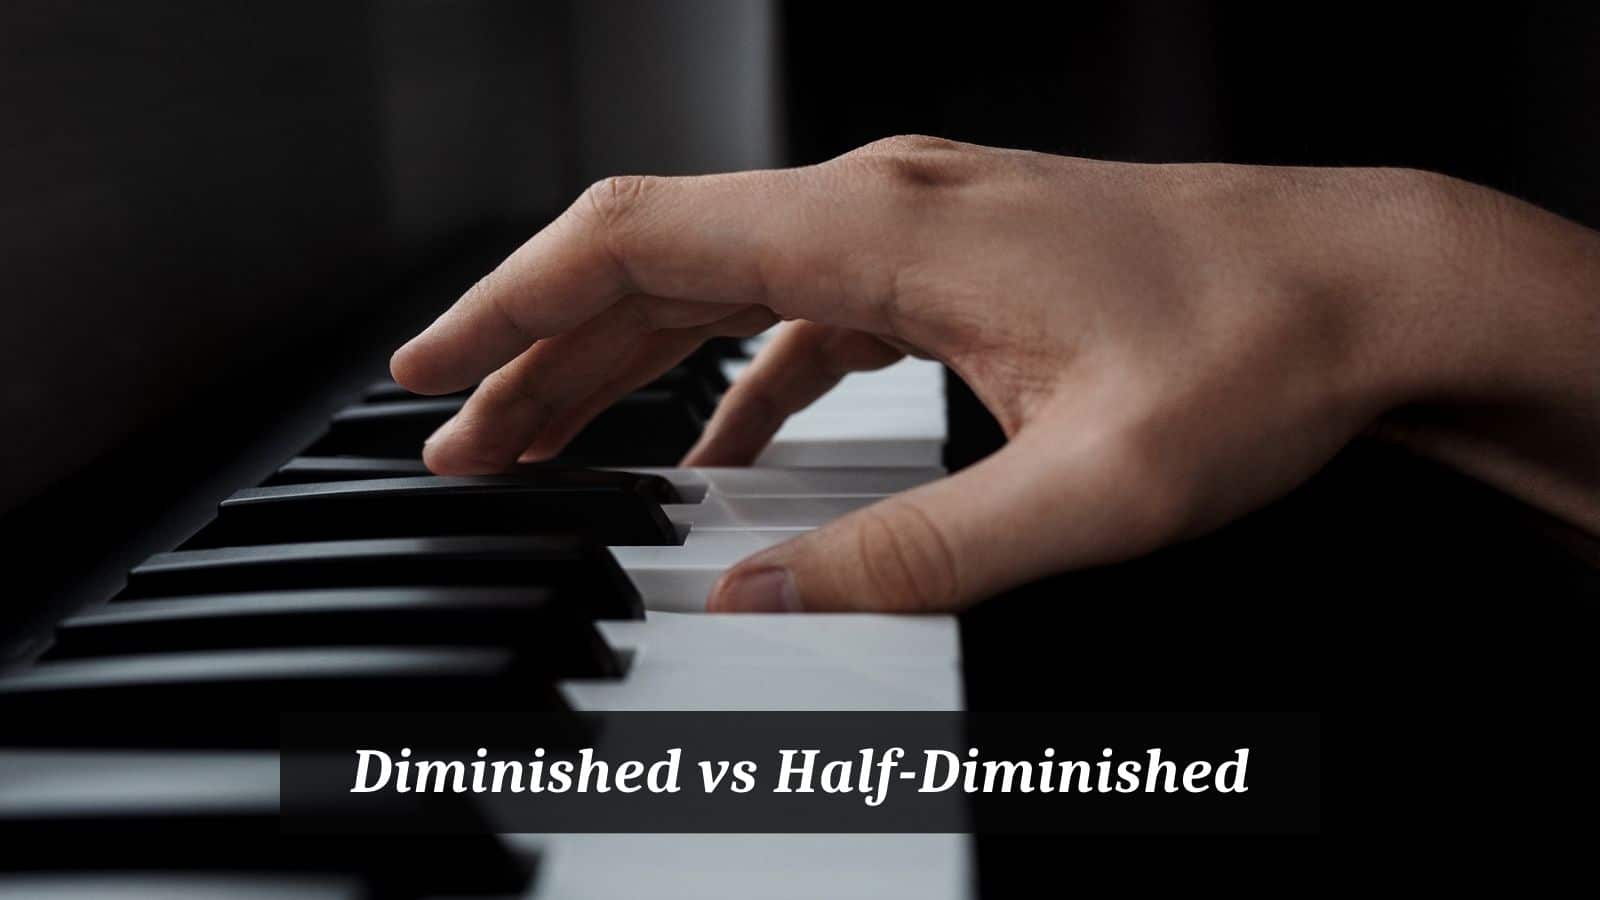 Diminished vs Half-Diminished